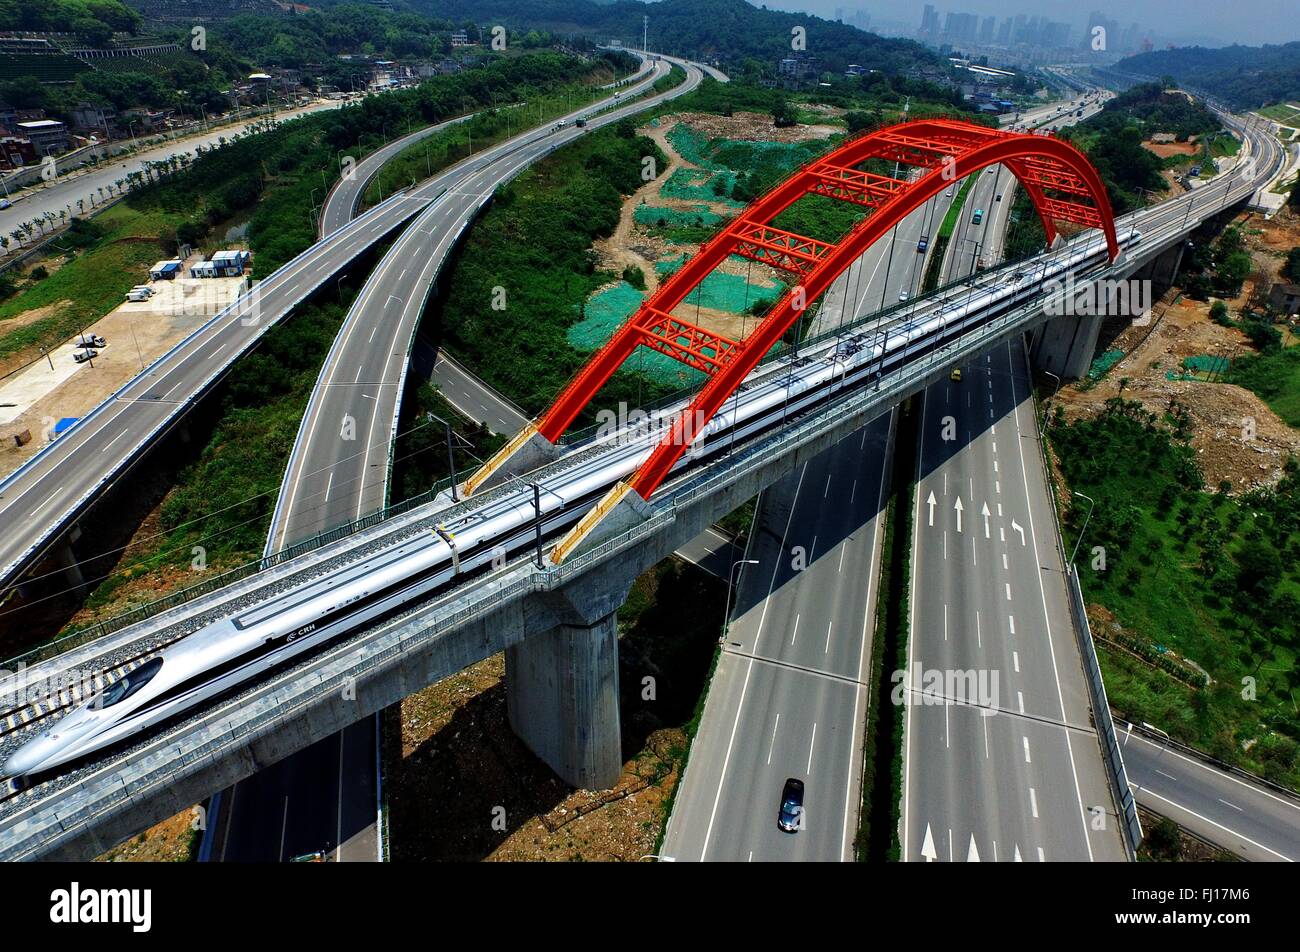 (160228)--Peking, 28. Februar 2016 (Xinhua)--Datei Foto am 1. Juni 2015 auf einem Hochgeschwindigkeitszug CRH380A zeigt ein Testlauf auf die Schnellfahrstrecke Hefei-Fuzhou in Fuzhou, Fujian Provinz Südosten Chinas Hauptstadt. "Building mehr High-Speed-Bahn" wurde ein heißes Thema bei den Jahrestagungen der Chinas Provinzen Gesetzgeber und politischen beratenden Gremien intensiv gehaltenen im Januar. China hat die weltweit größte Hochgeschwindigkeitsnetz, mit der gesamten Länge bis Ende 2015, etwa 60 Prozent der weltweit insgesamt 19.000 km in Betrieb. Die expandierende Schnellschiene Netz i Stockfoto